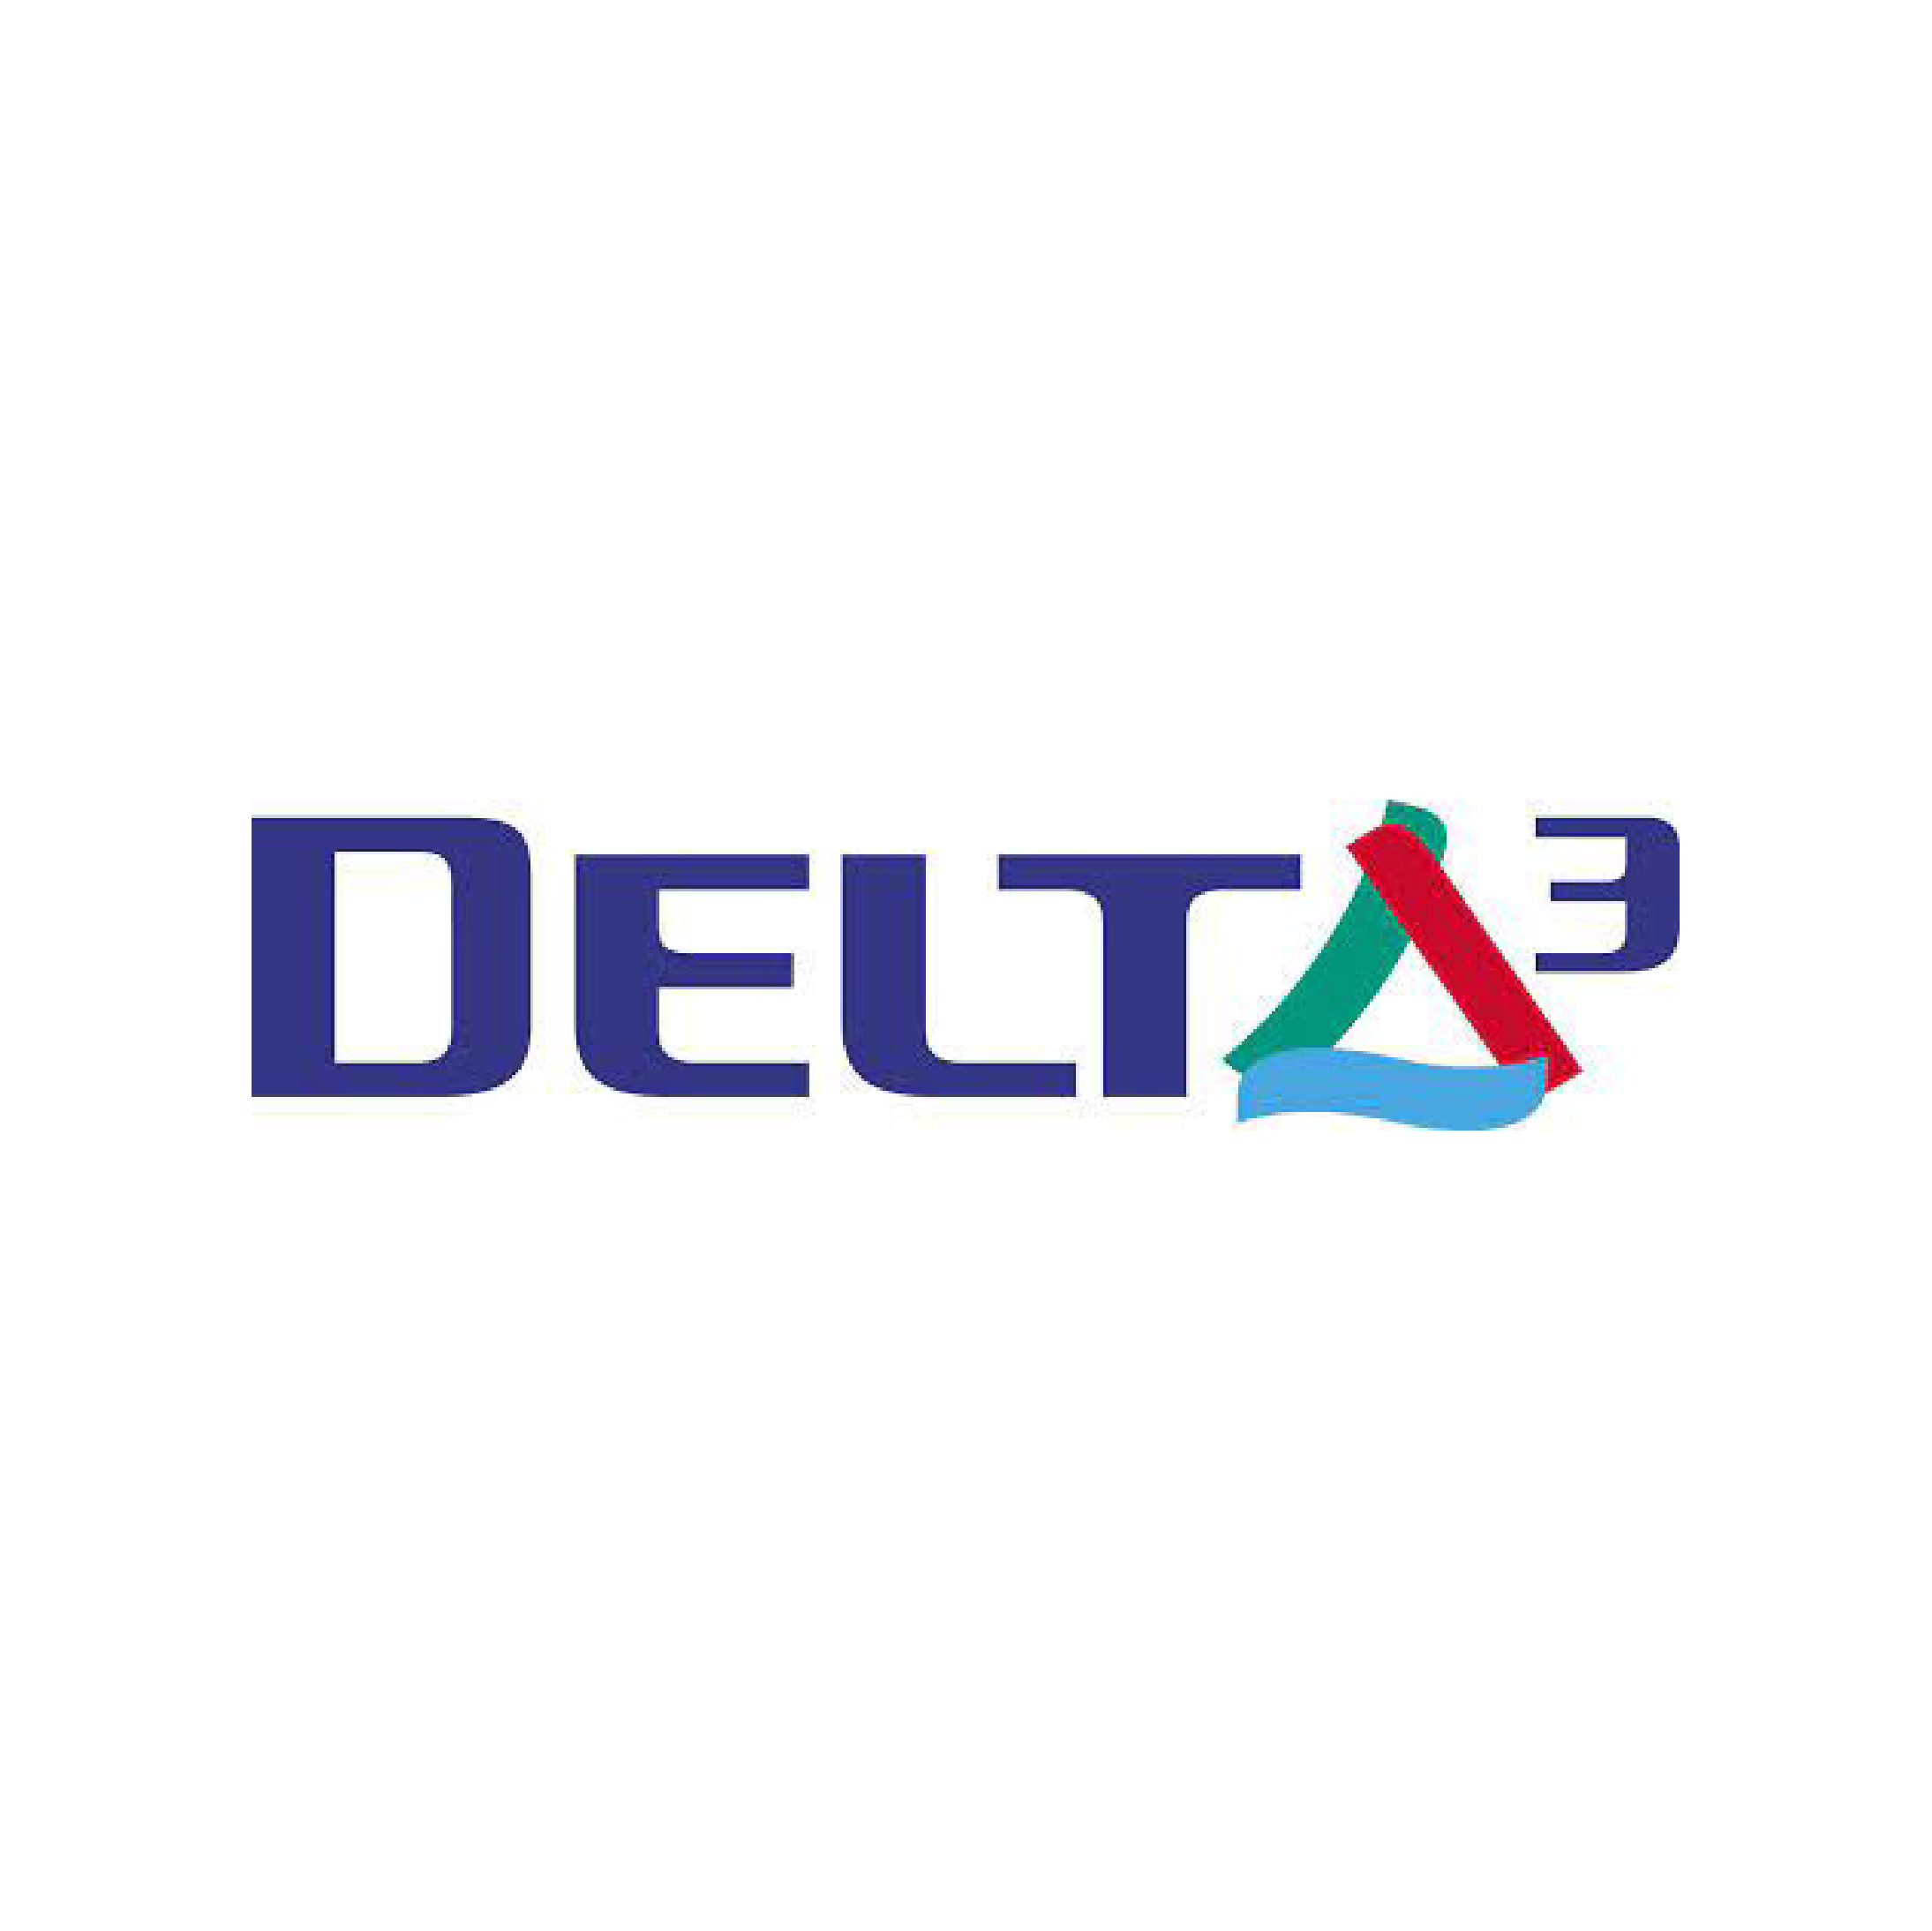 Delta3